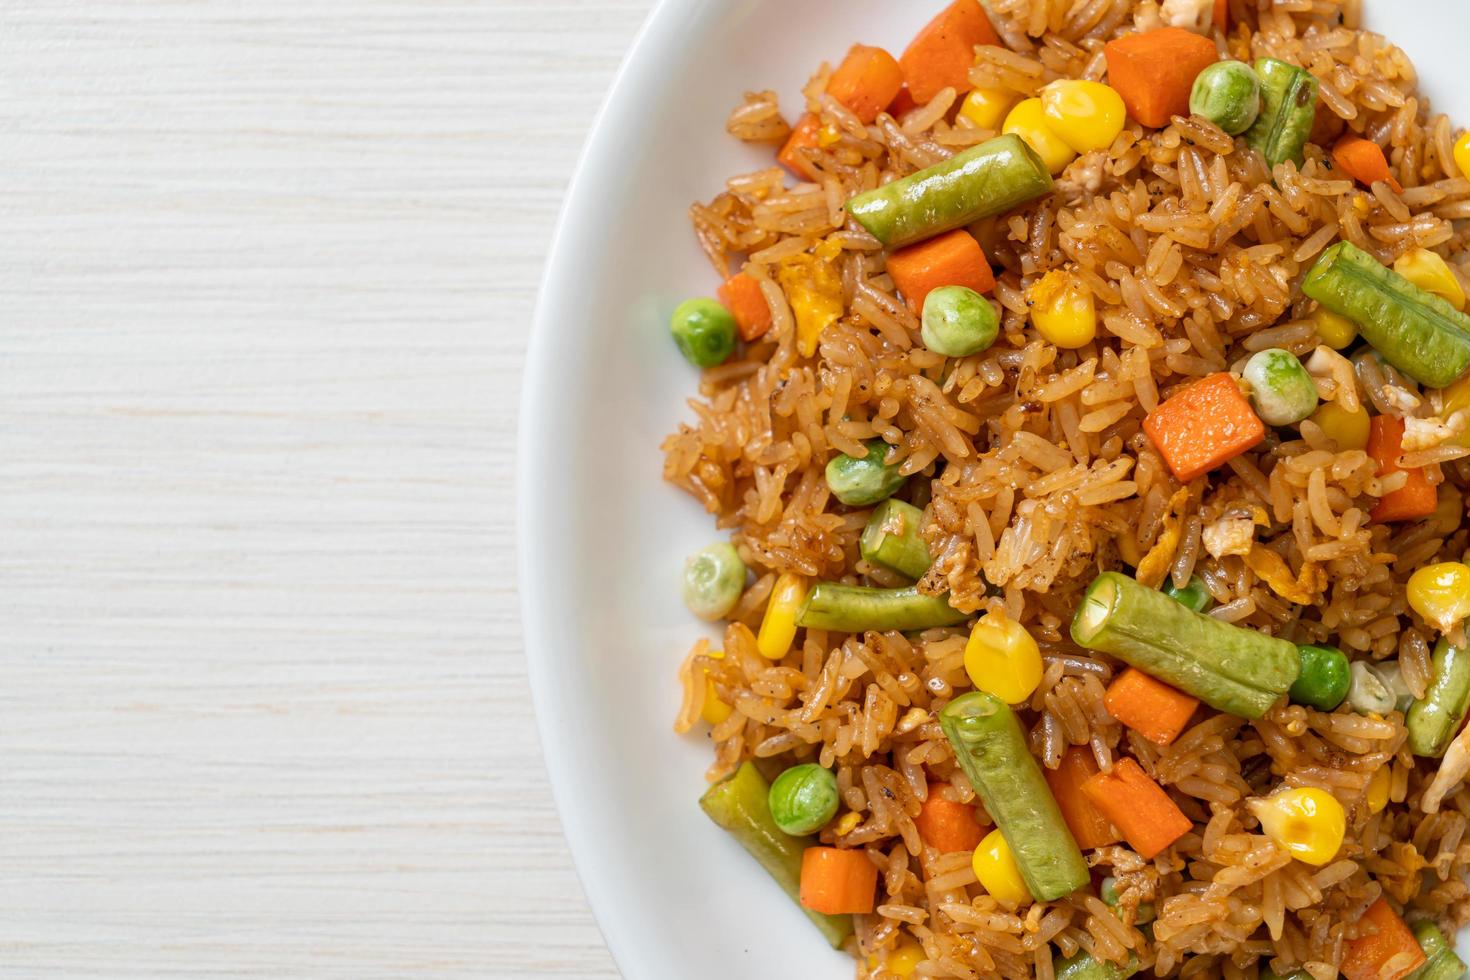 arroz frito con guisantes, zanahoria y maíz - estilo de comida vegetariana y saludable foto